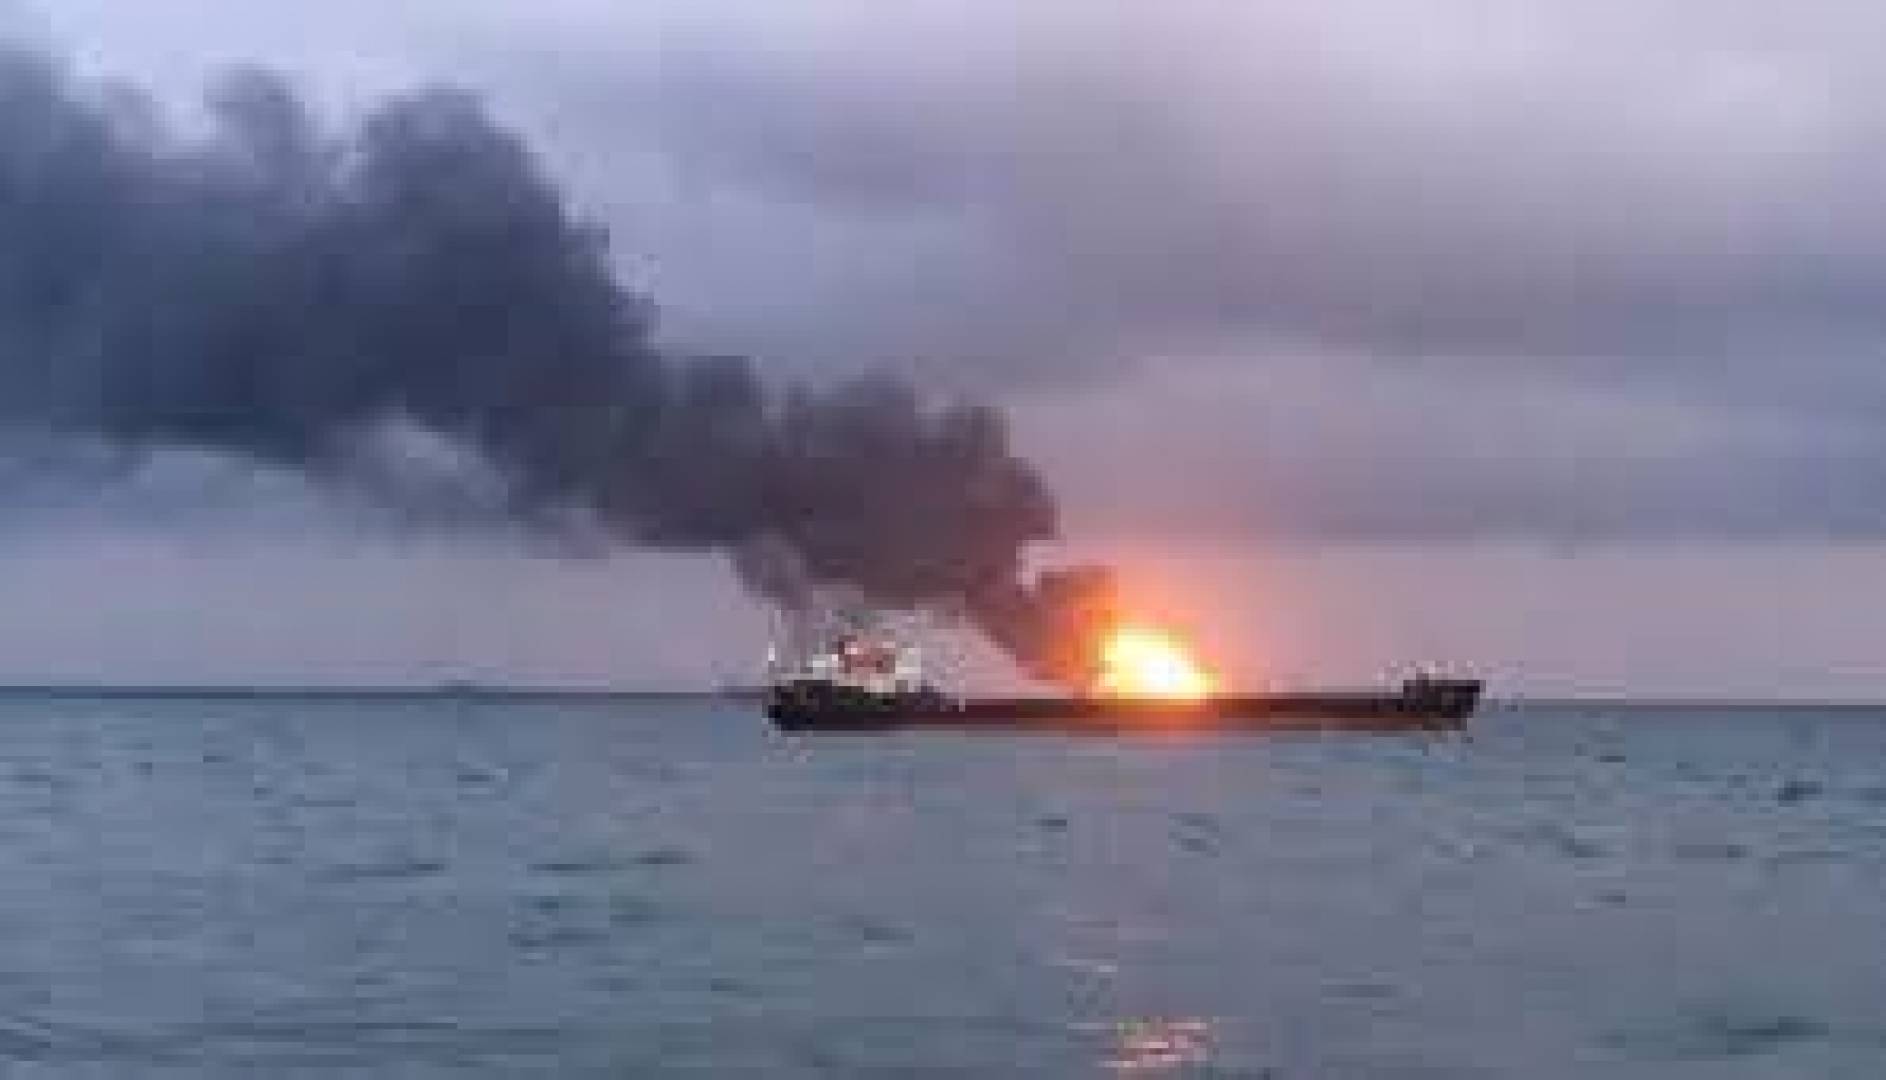 انفجار هائل على متن سفينة شحن قبالة سواحل تركيا، وفقدان قبطانه